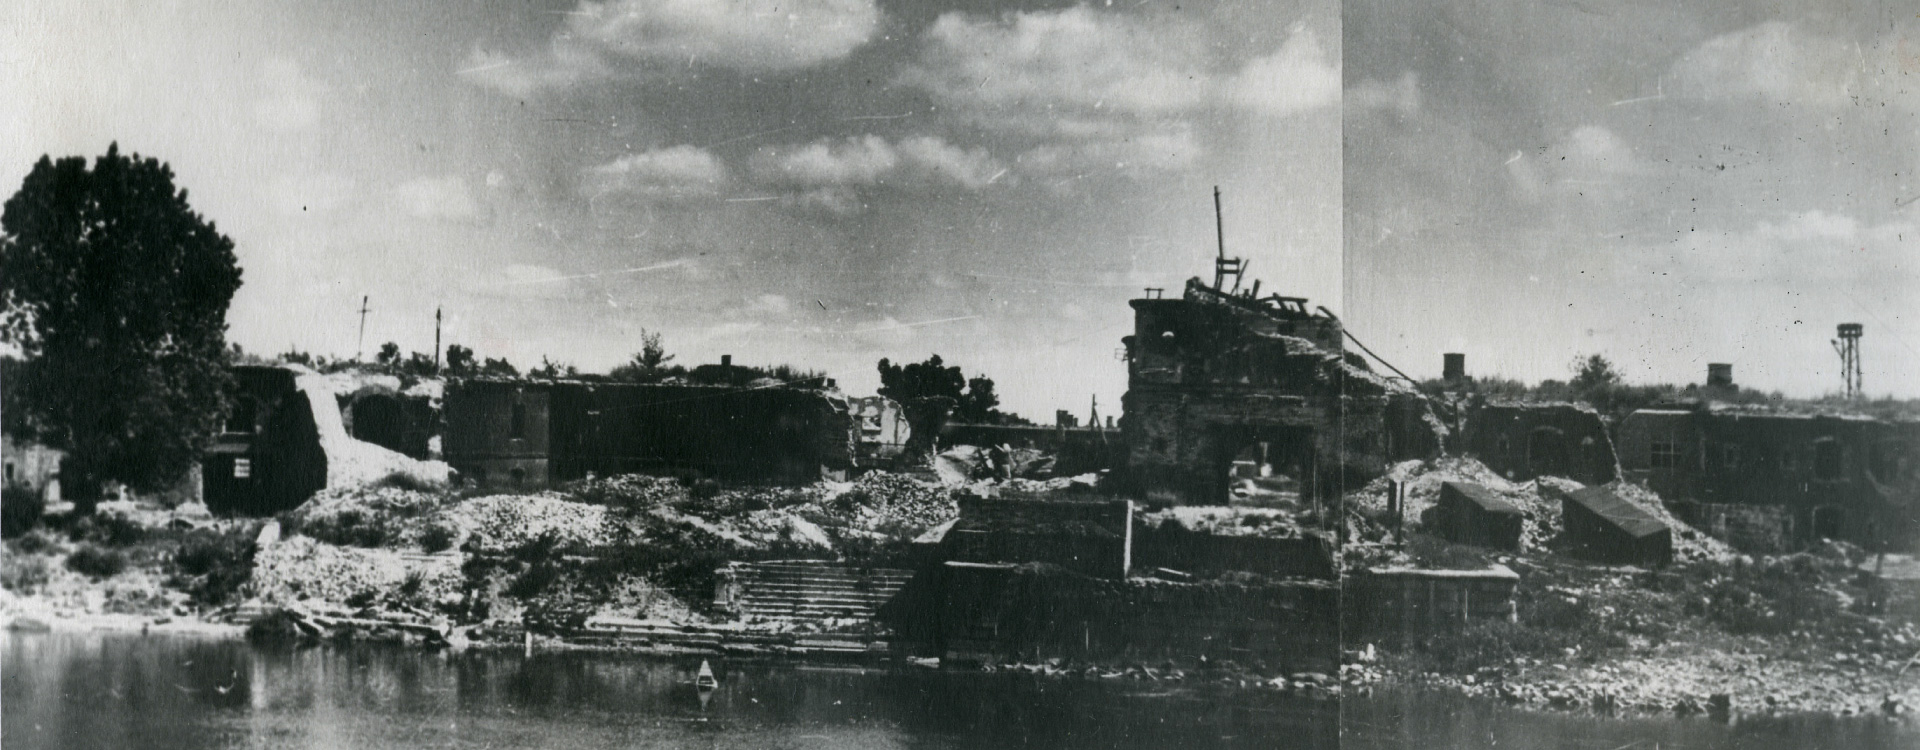 Общий вид Брестской крепости, разрушенной немецко-фашистскими захватчиками в дни обороны. 1941 г. 